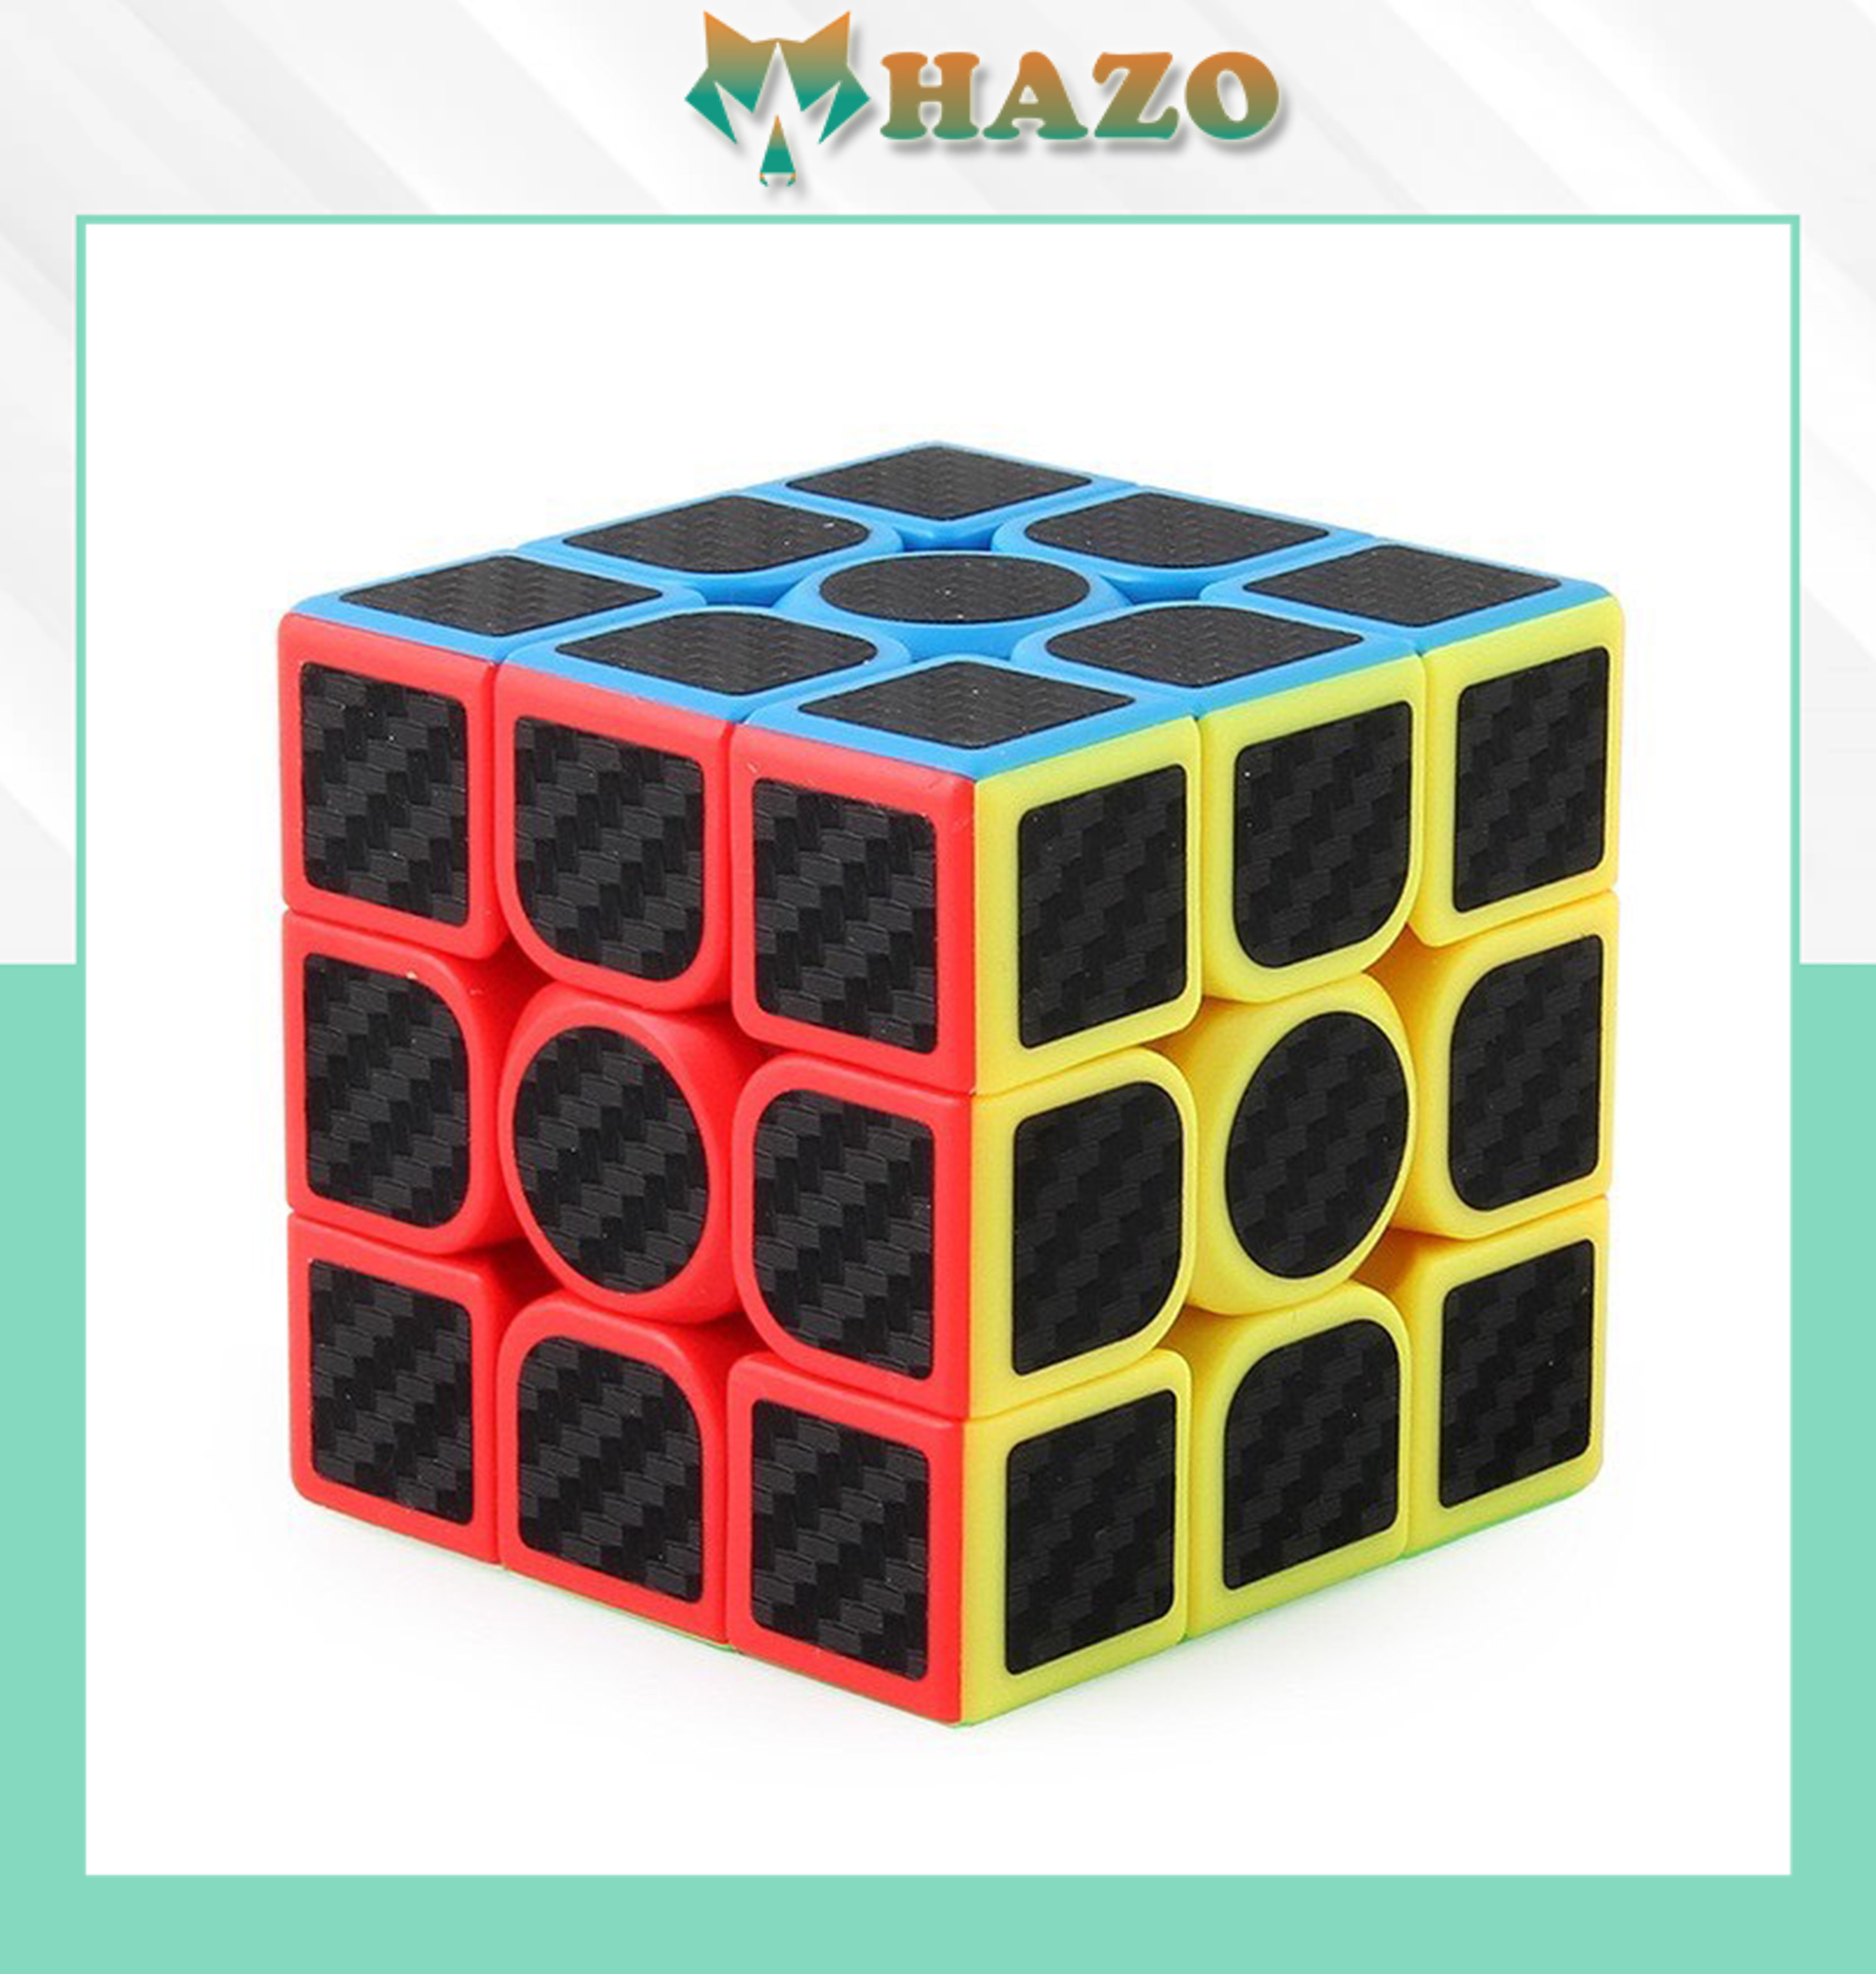 Đồ Chơi Trí Tuệ Khối Rubik 2X2 Carbon Moyu Meilong & Khối Rubik 3X3 Carbon